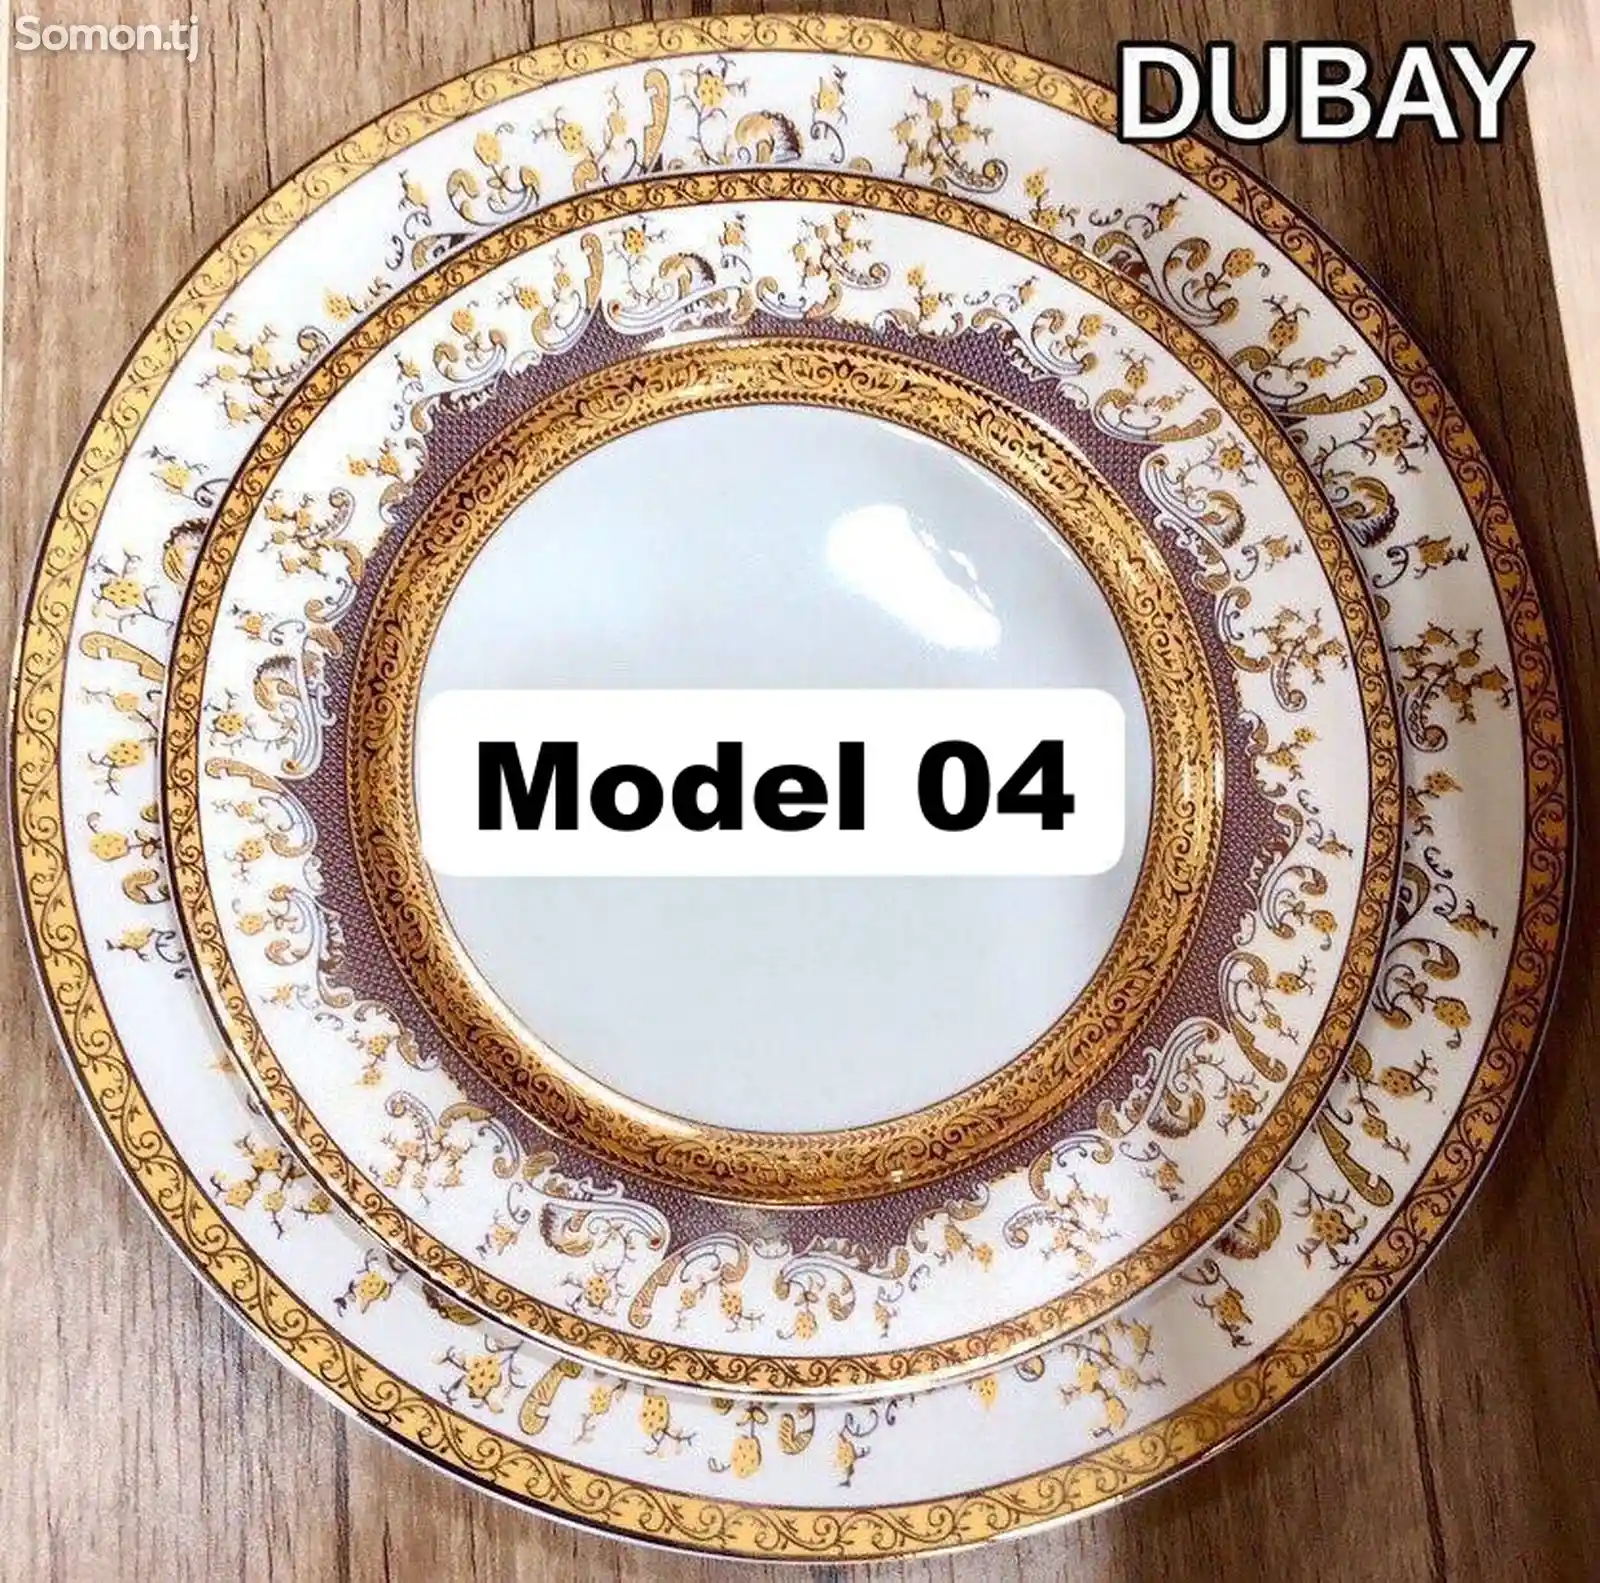 Набор посуды Dubay модель 04